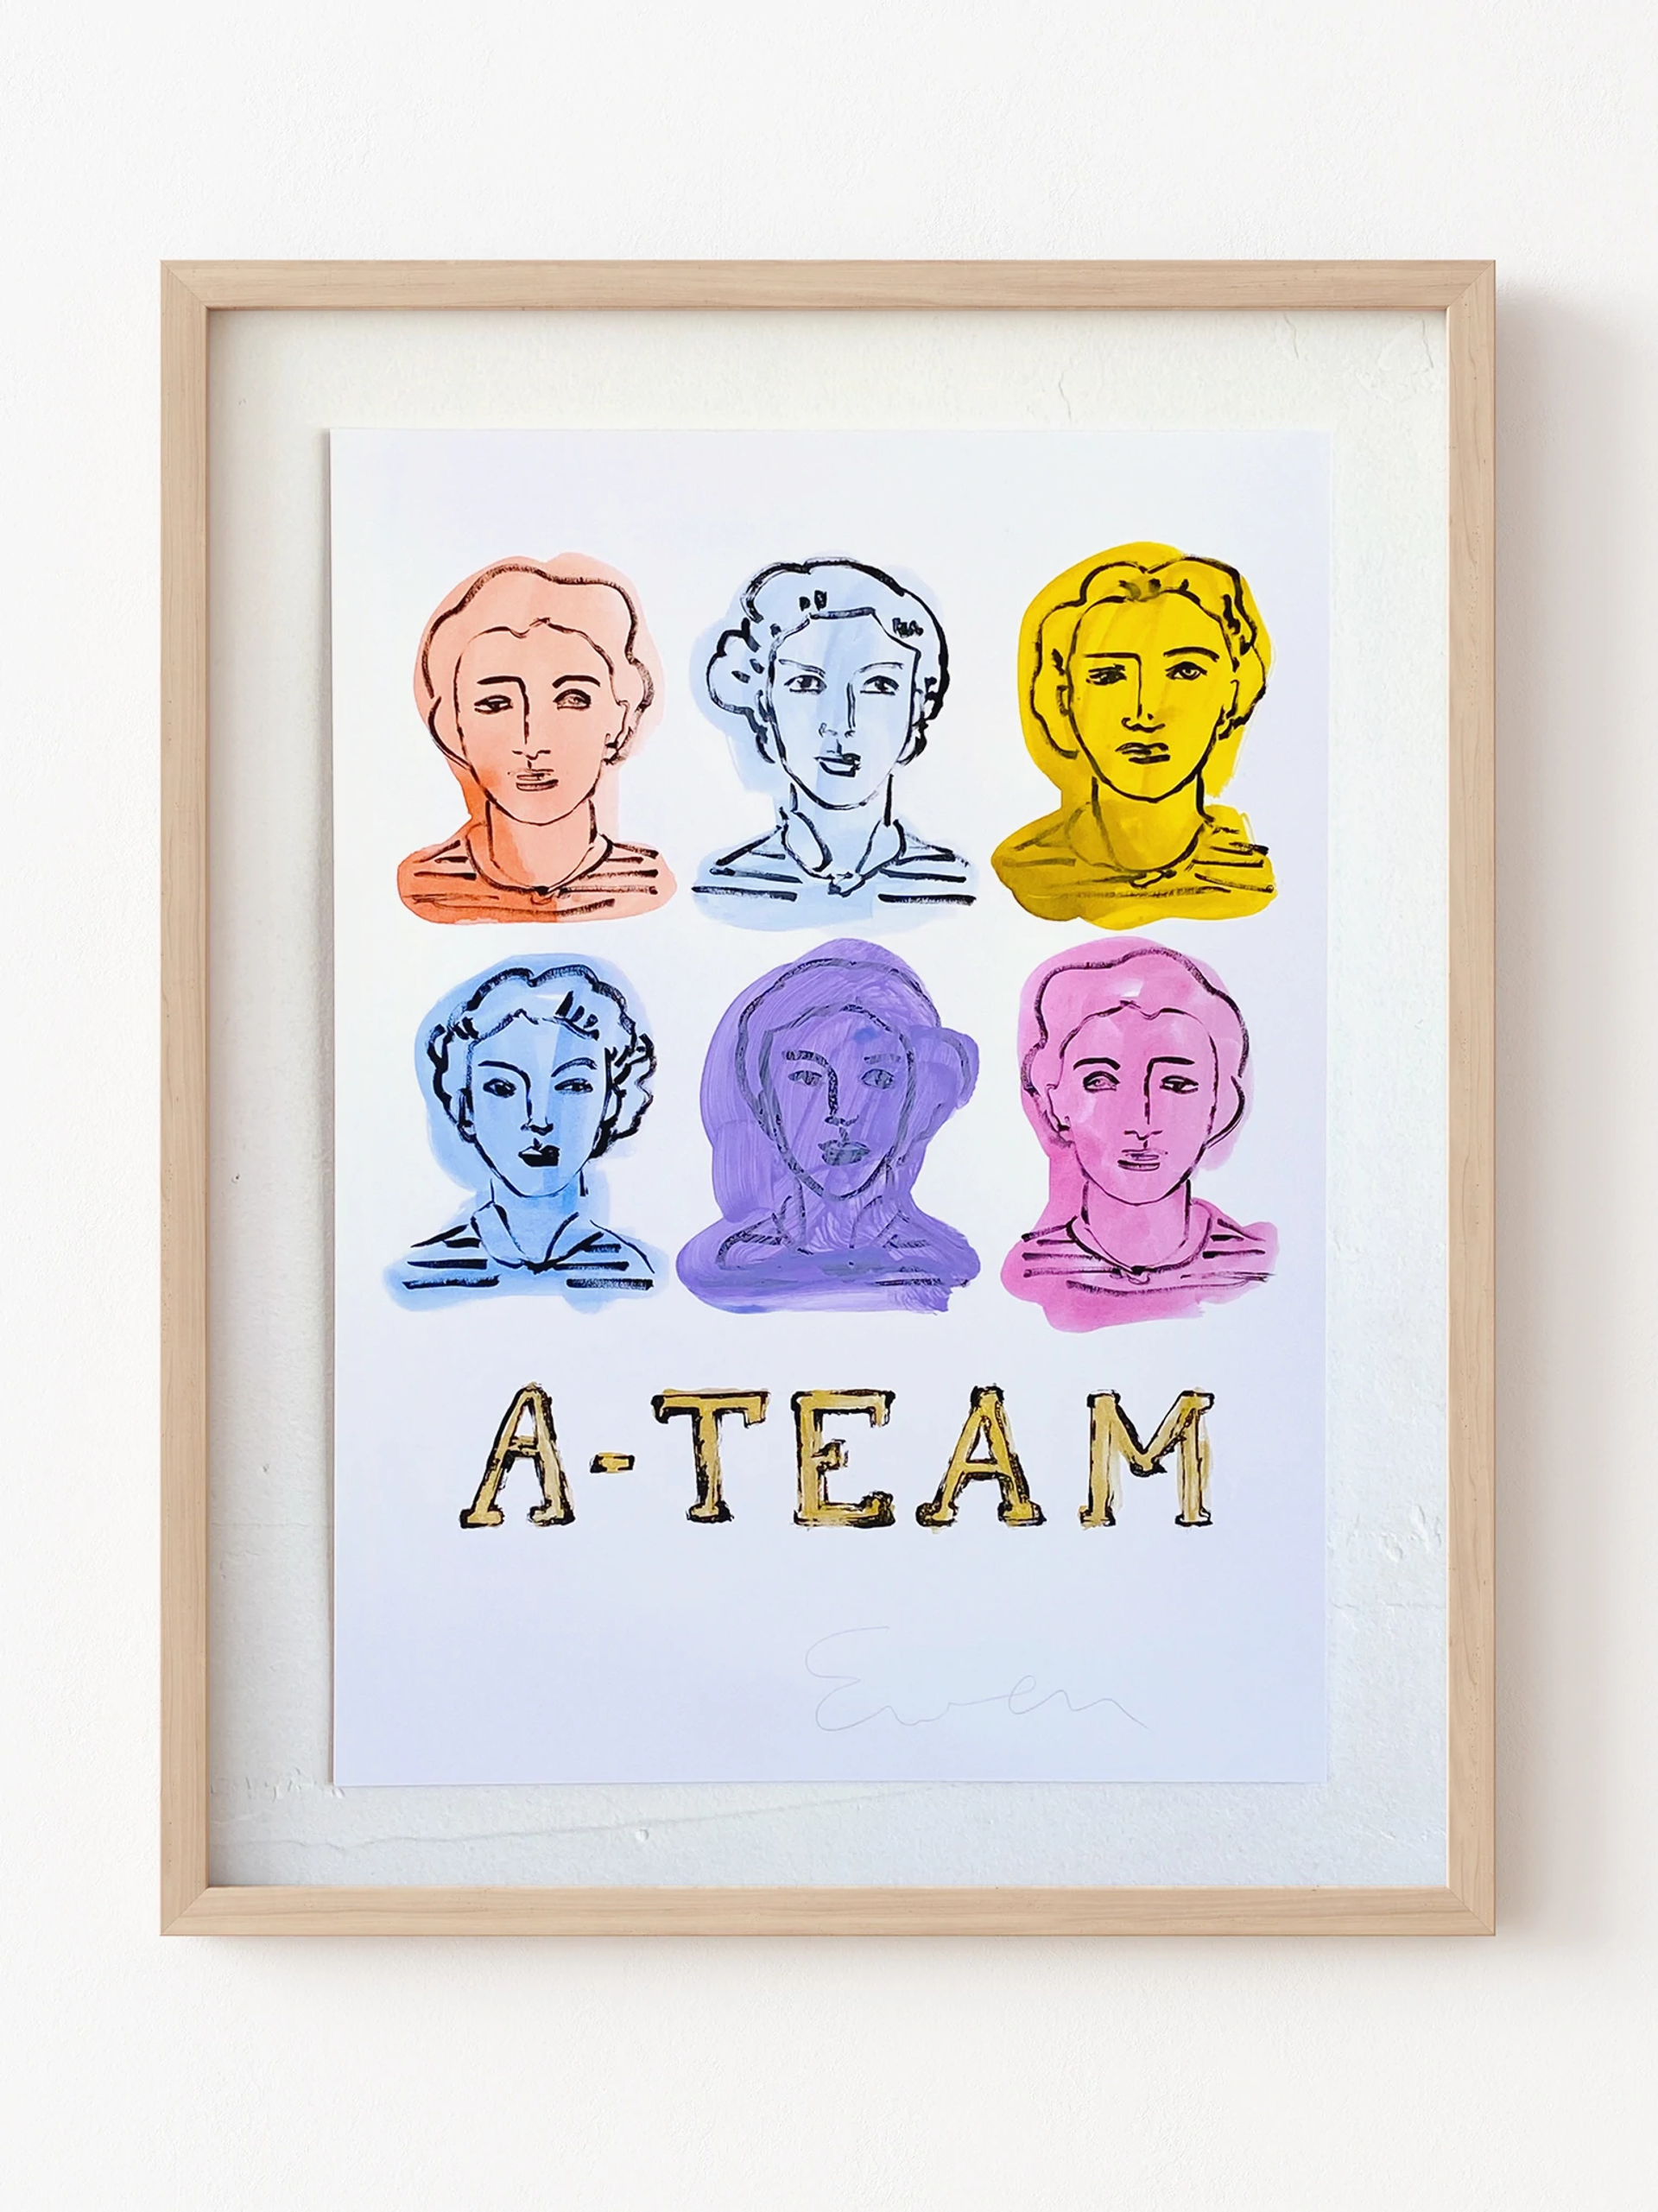 A-Team by Anne-Louise Ewen